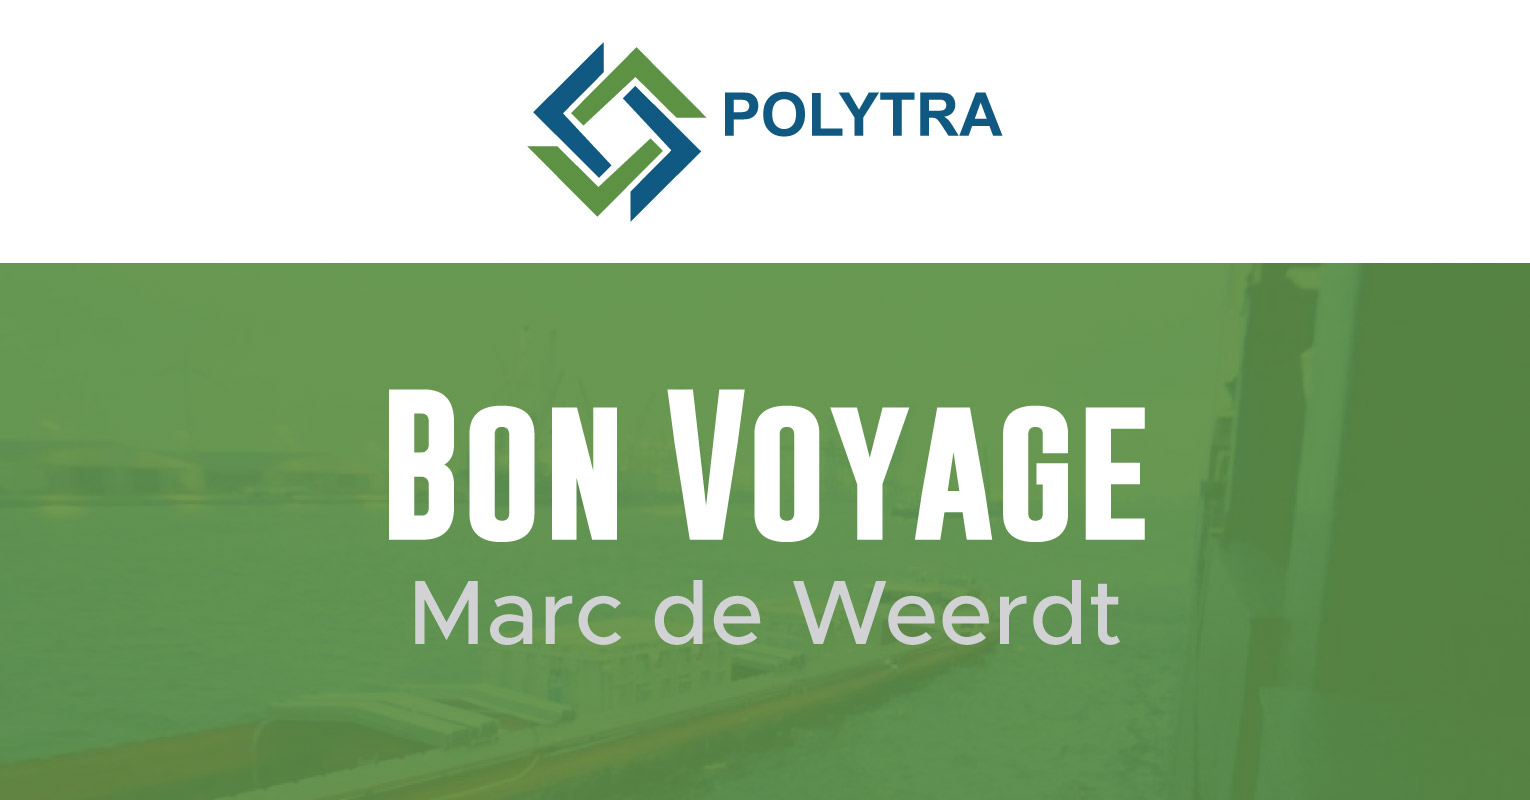 Bon Voyage to Marc de Weerdt of Polytra